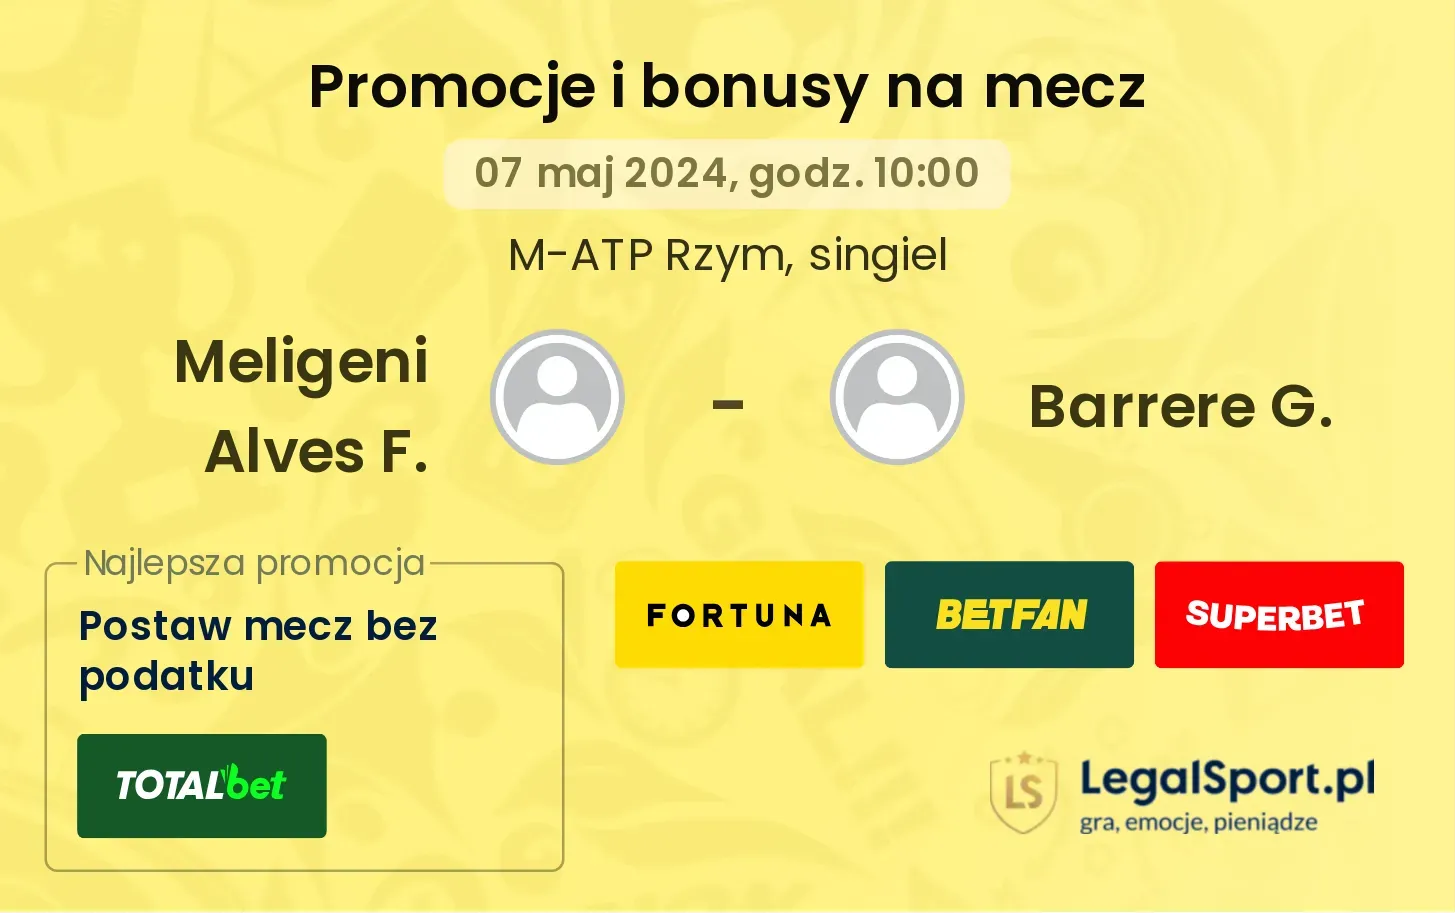 Meligeni Alves F. - Barrere G. promocje bonusy na mecz